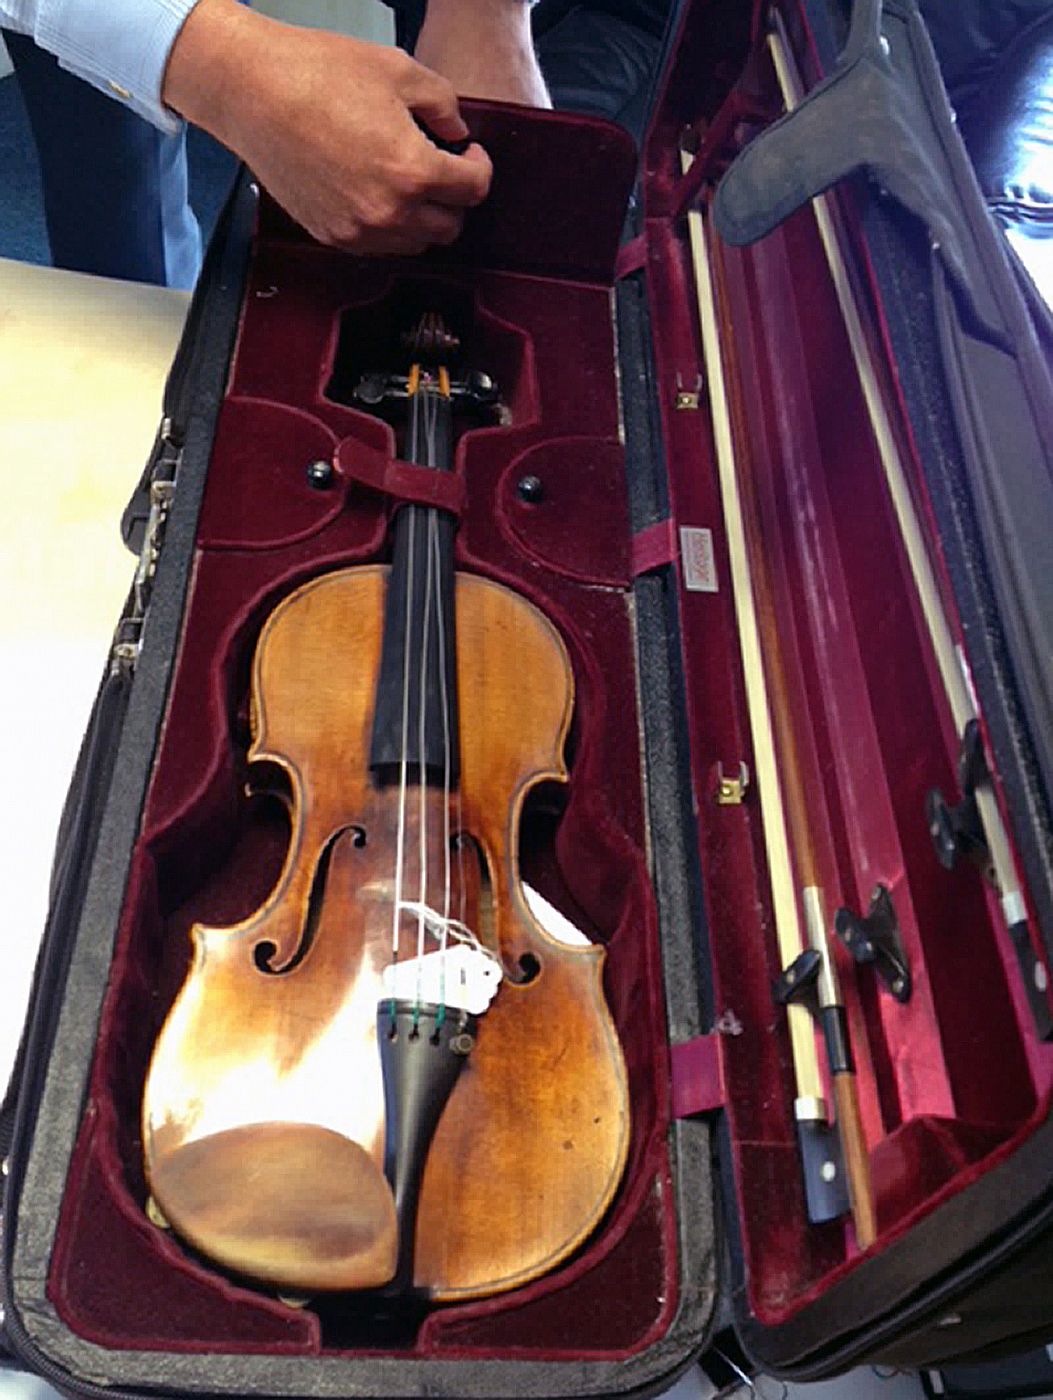 Detalle del violín Stradivarius que le fue robado a una artista coreana en una cafetería cercana a la estación londinense de Euston.